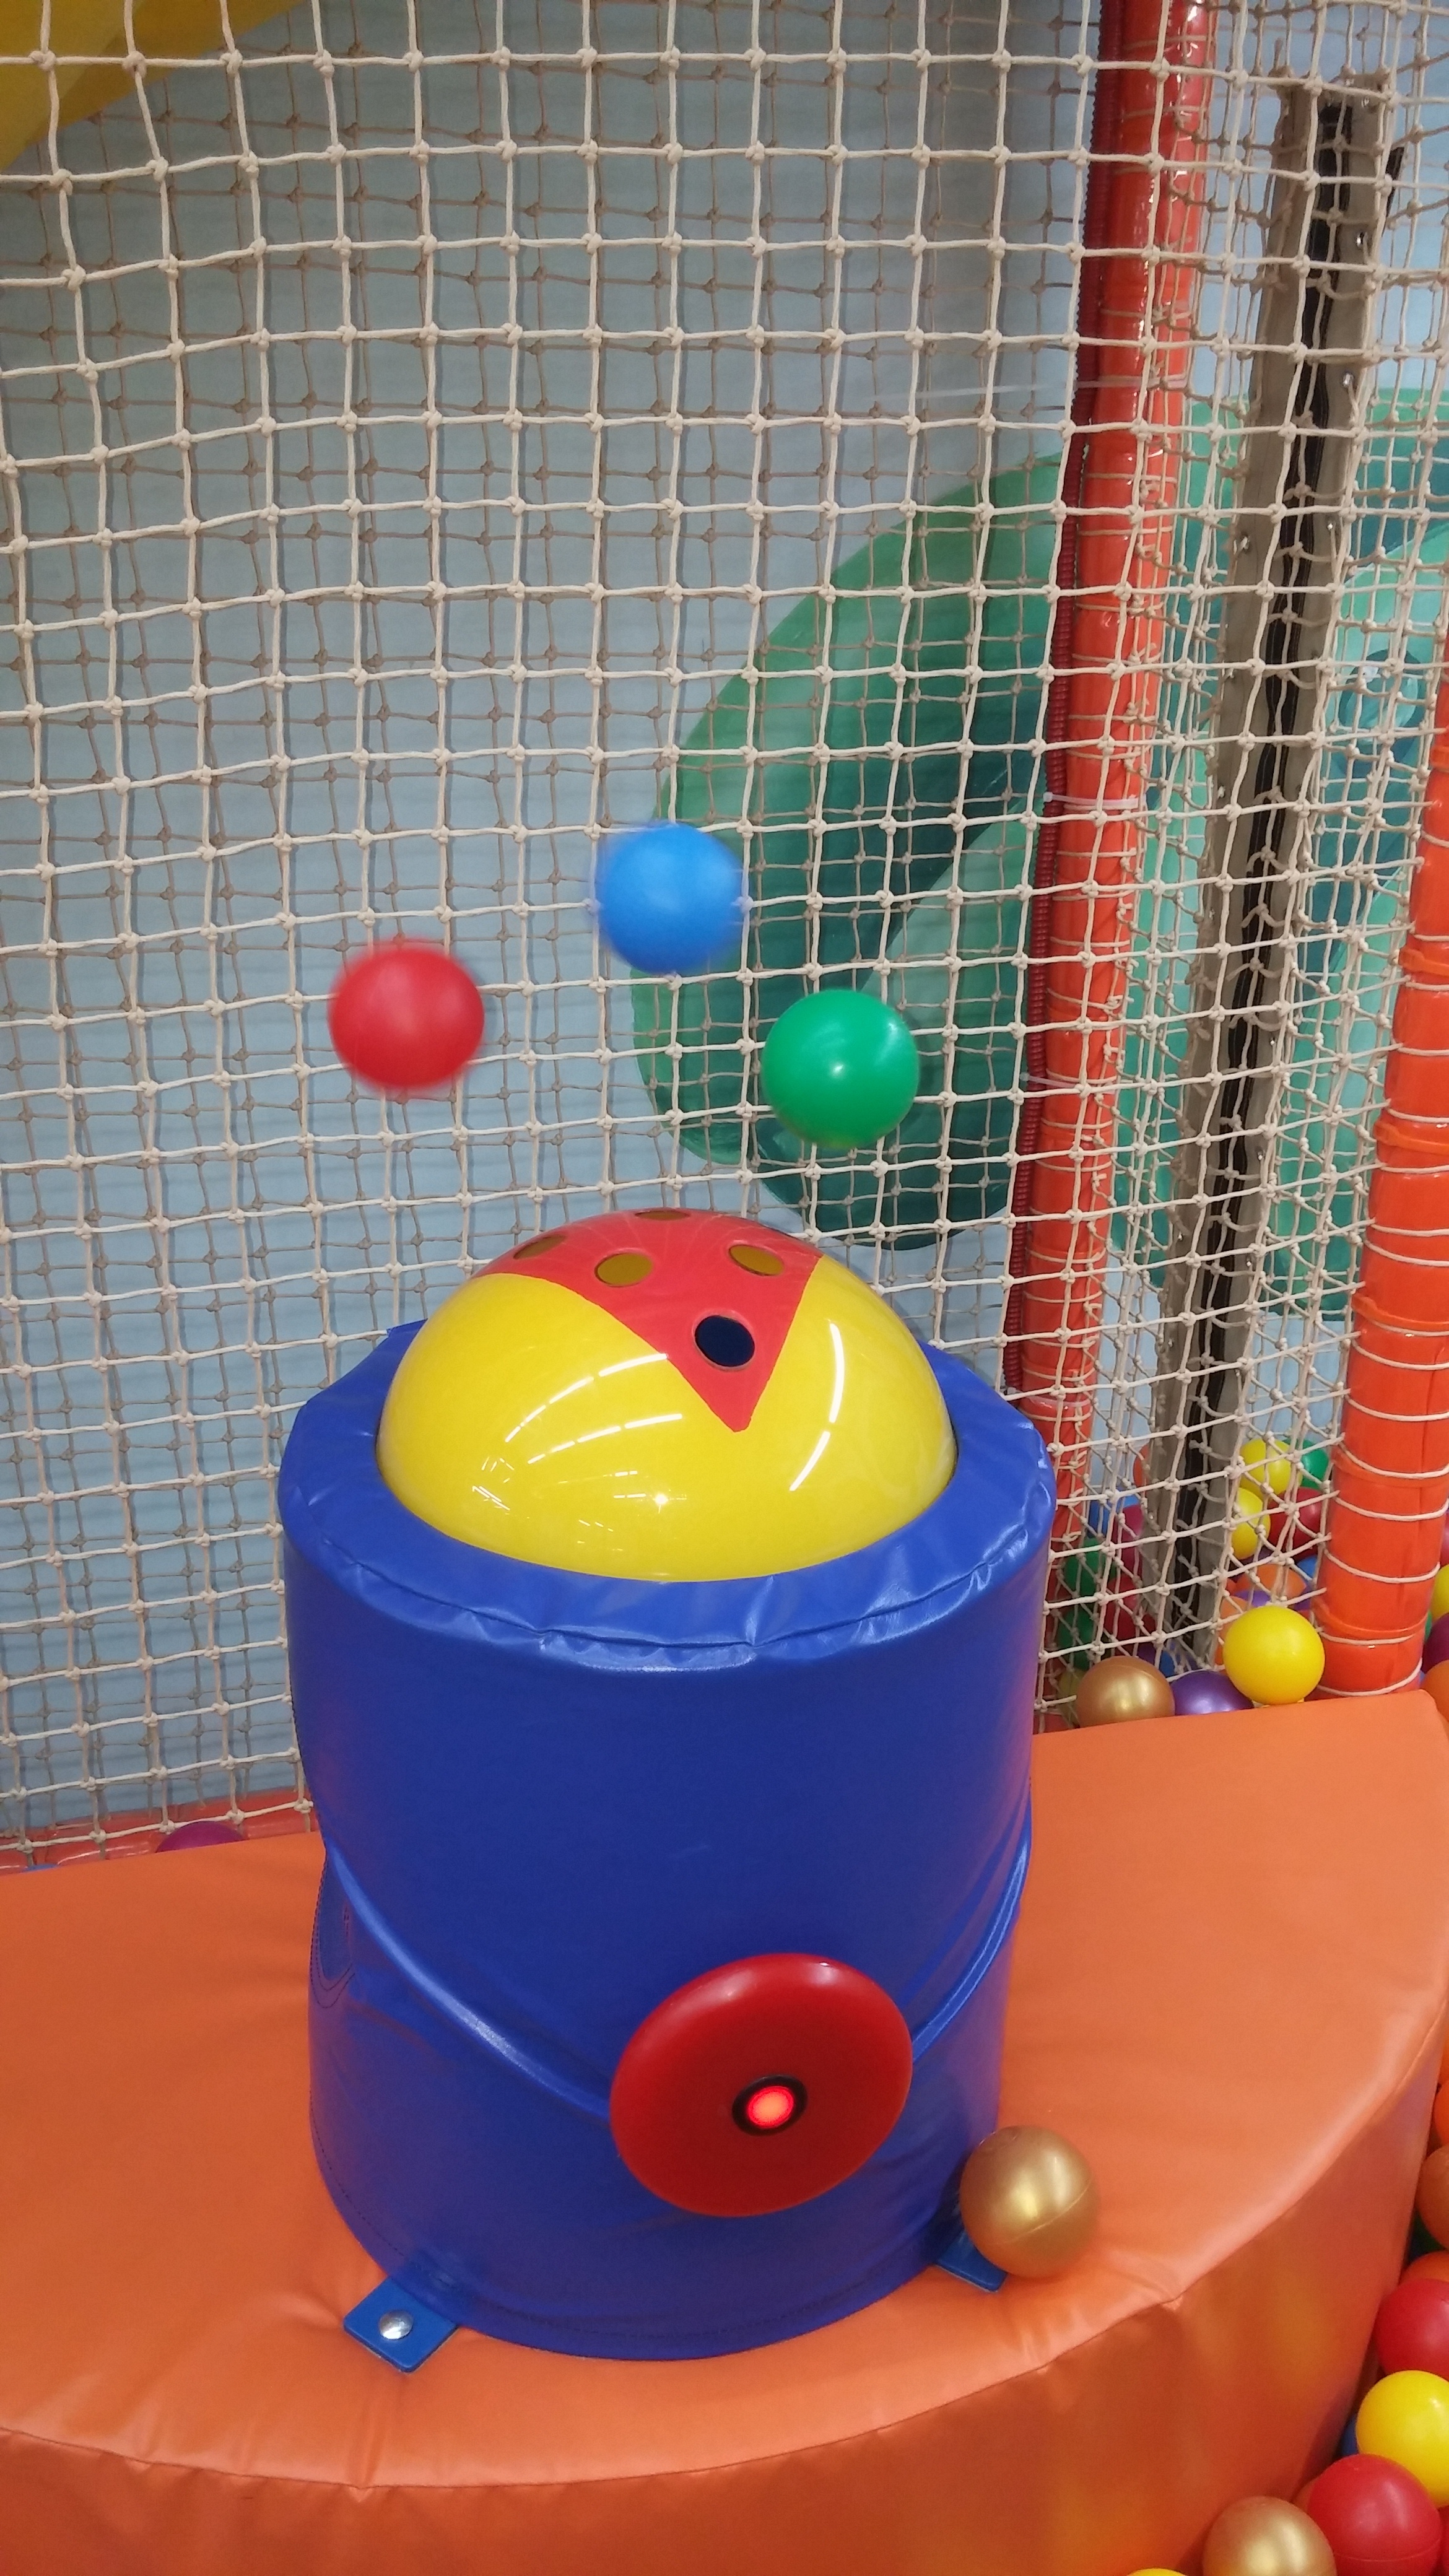 מתקן כדורי קסם לבריכת כדורים רב מרחב - תמונה מספר 3